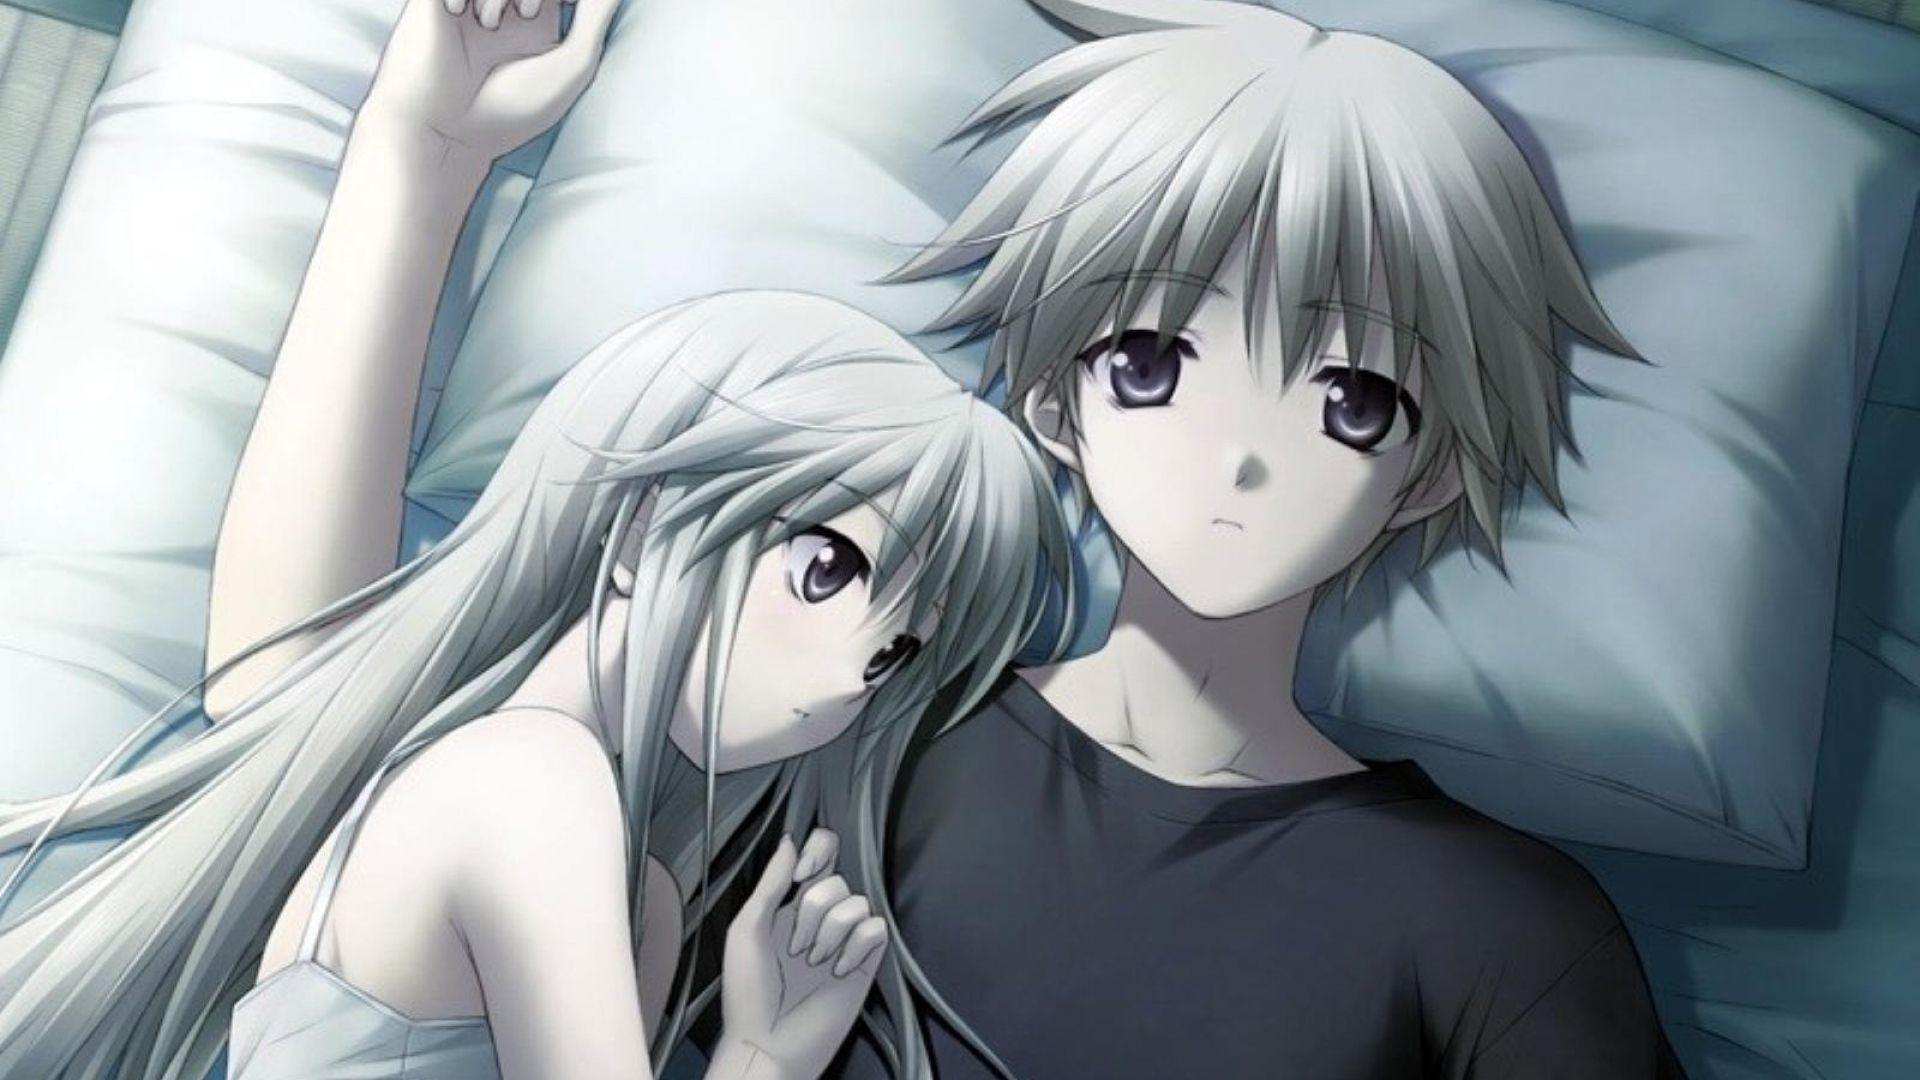 Crying Couple Hug Anime Wallpapers - Wallpaper Cave